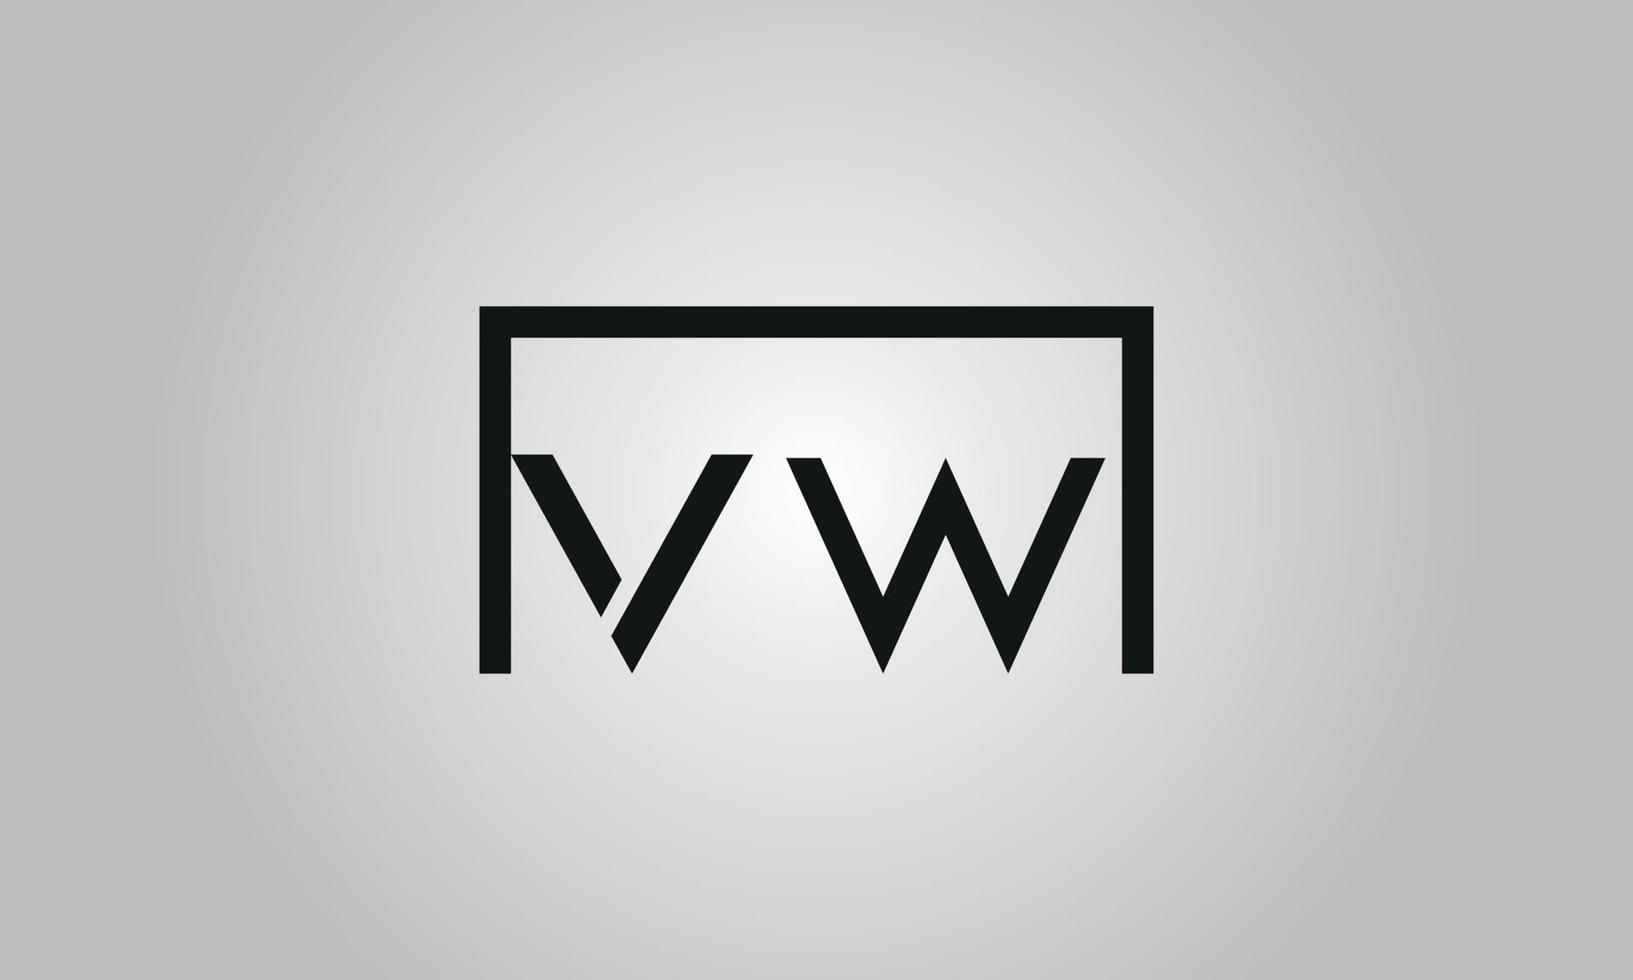 carta design de logotipo vw. vw logotipo com forma quadrada em cores pretas modelo de vetor livre.